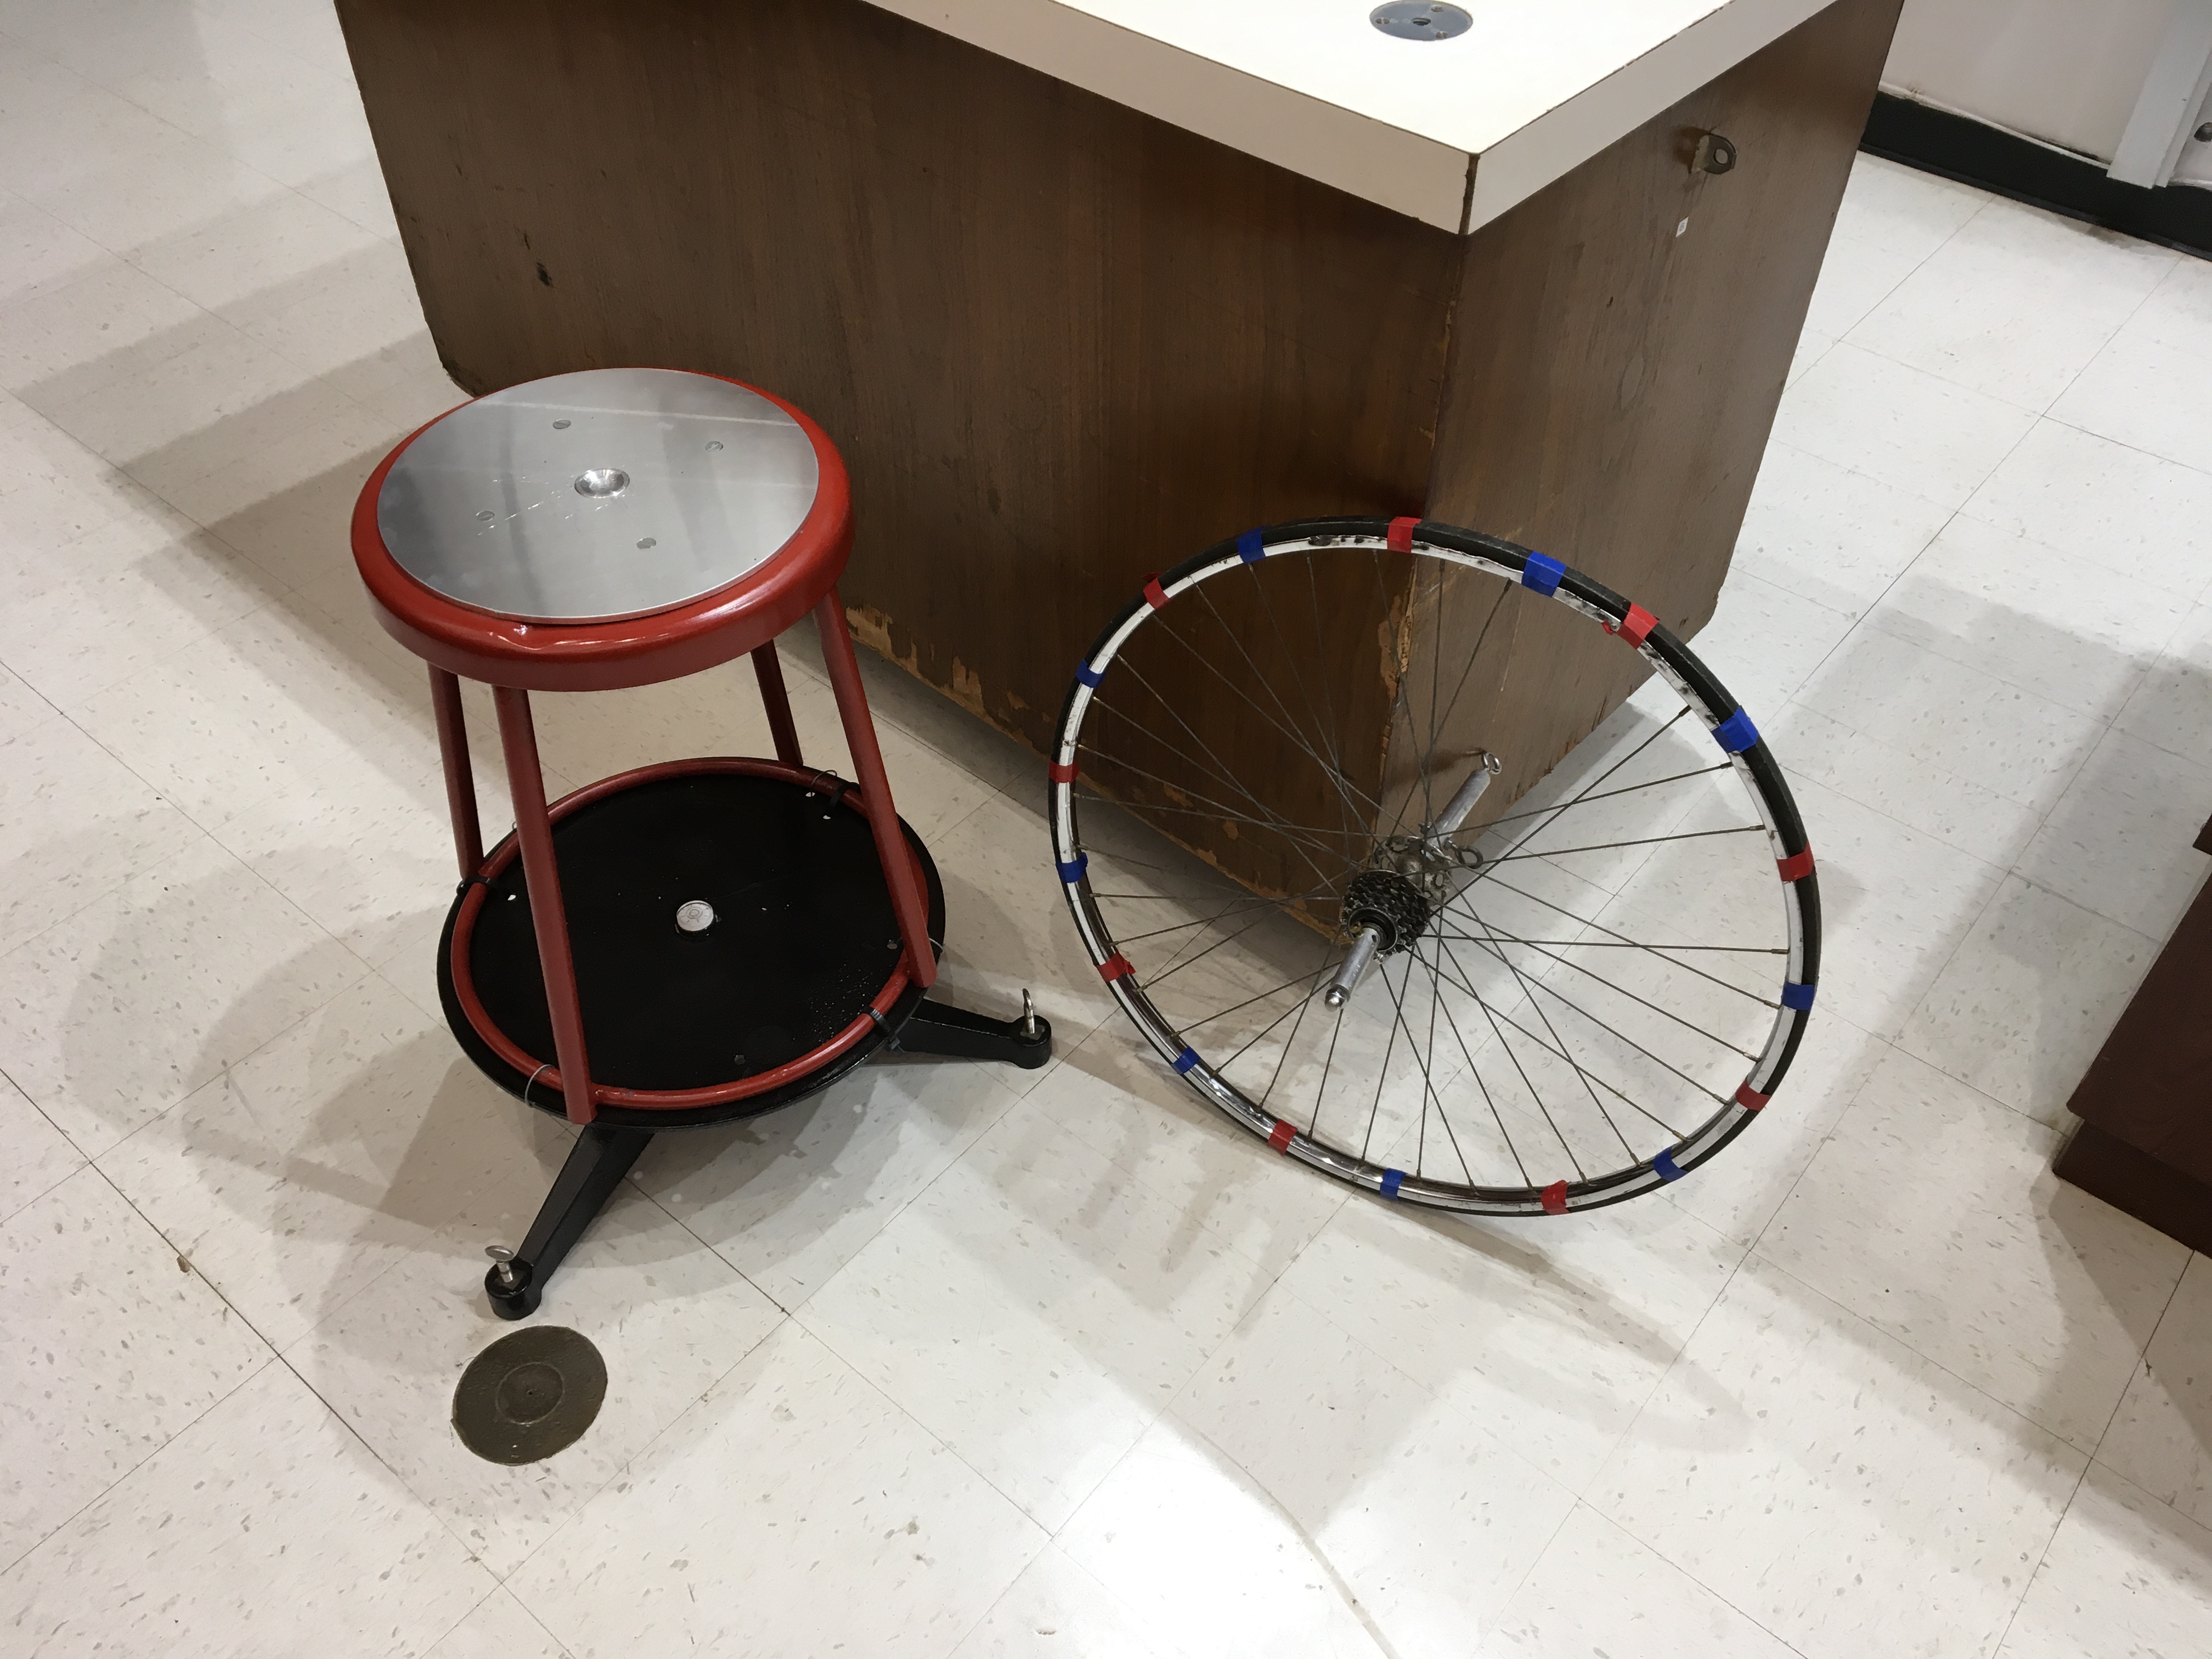 gyroscope bike wheel